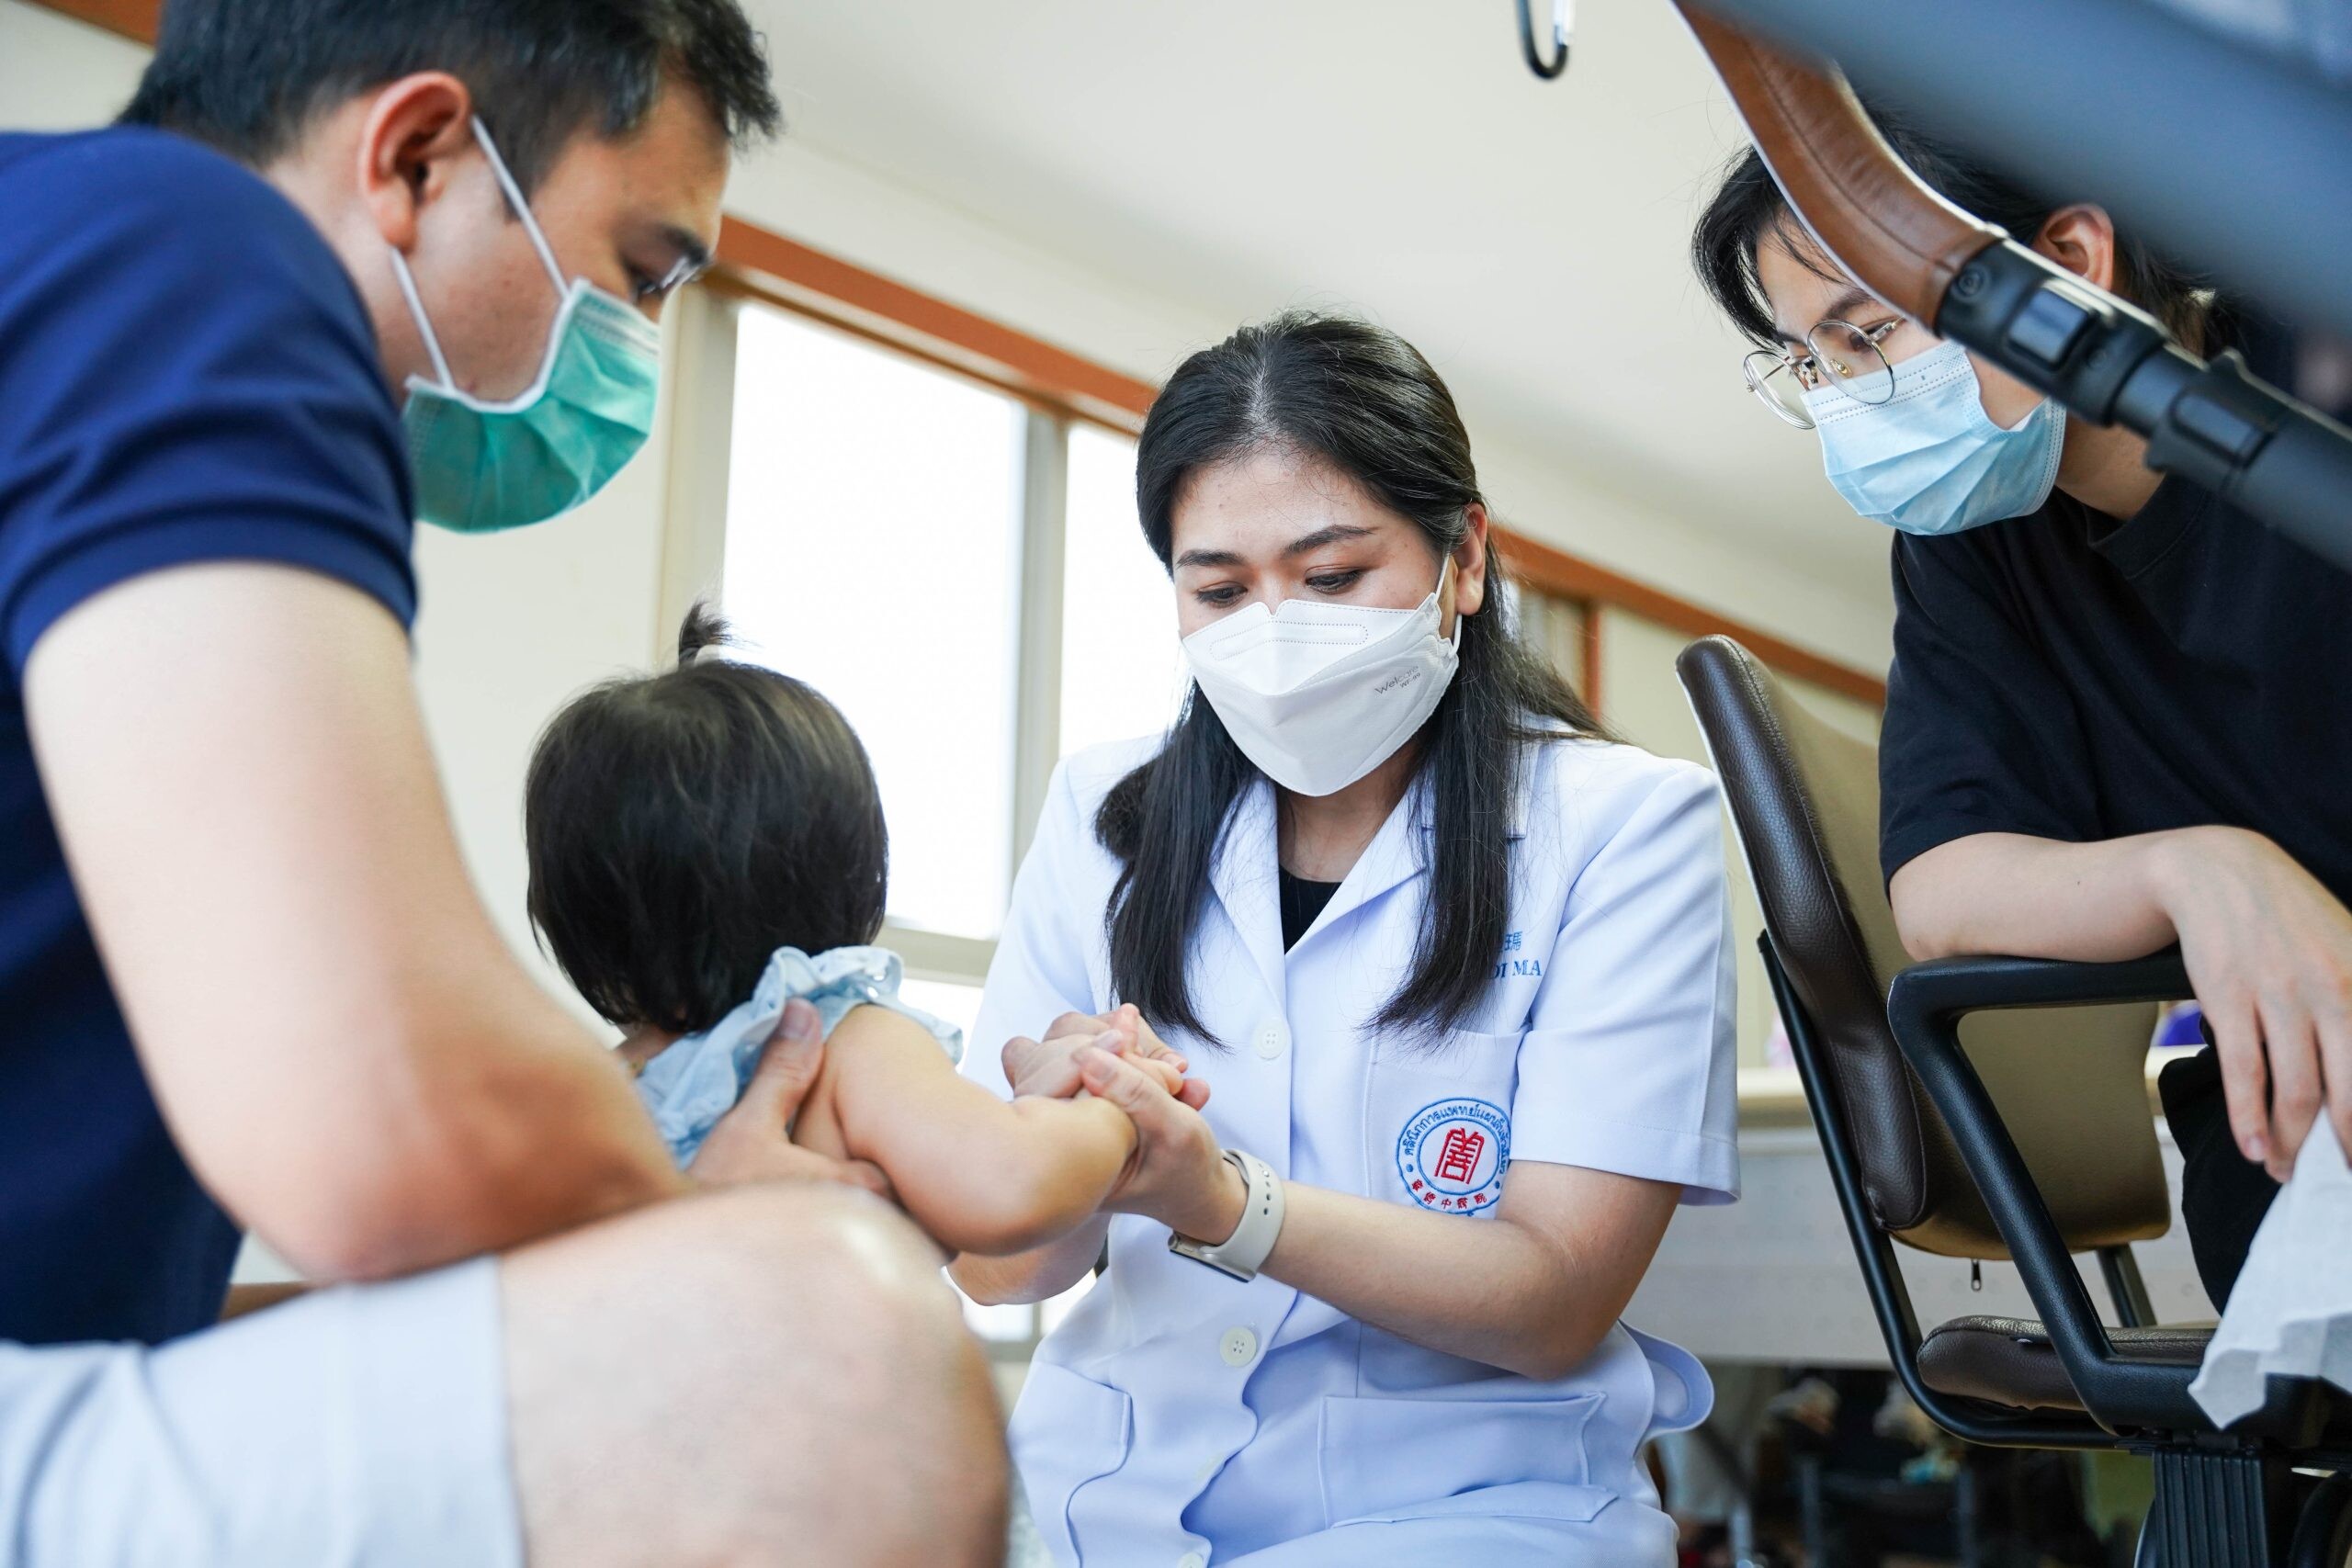 คลินิกการแพทย์แผนจีนหัวเฉียว จัดเสวนาภาษาหมอจีน หัวข้อ "ทุยหนาเพื่อกระตุ้นพัฒนาการเด็ก"